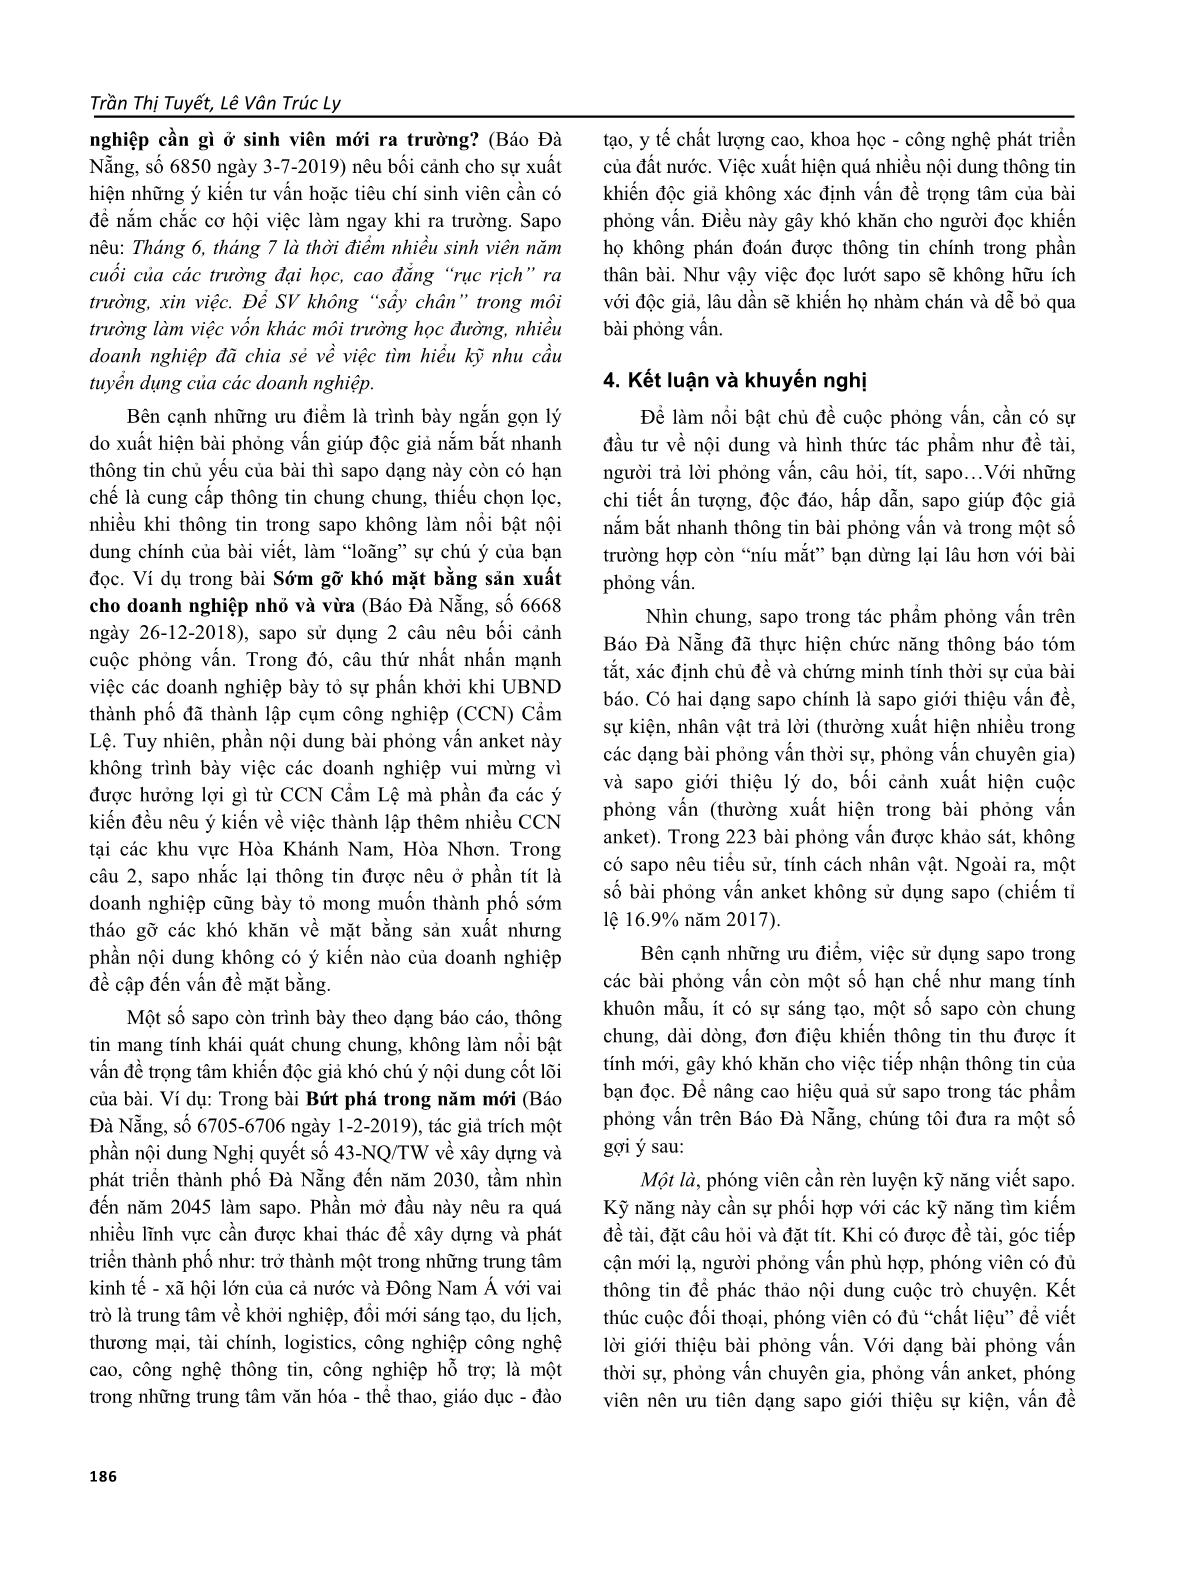 Lời mở đầu (sapo) trong tác phẩm phỏng vấn trên báo Đà Nẵng trang 6